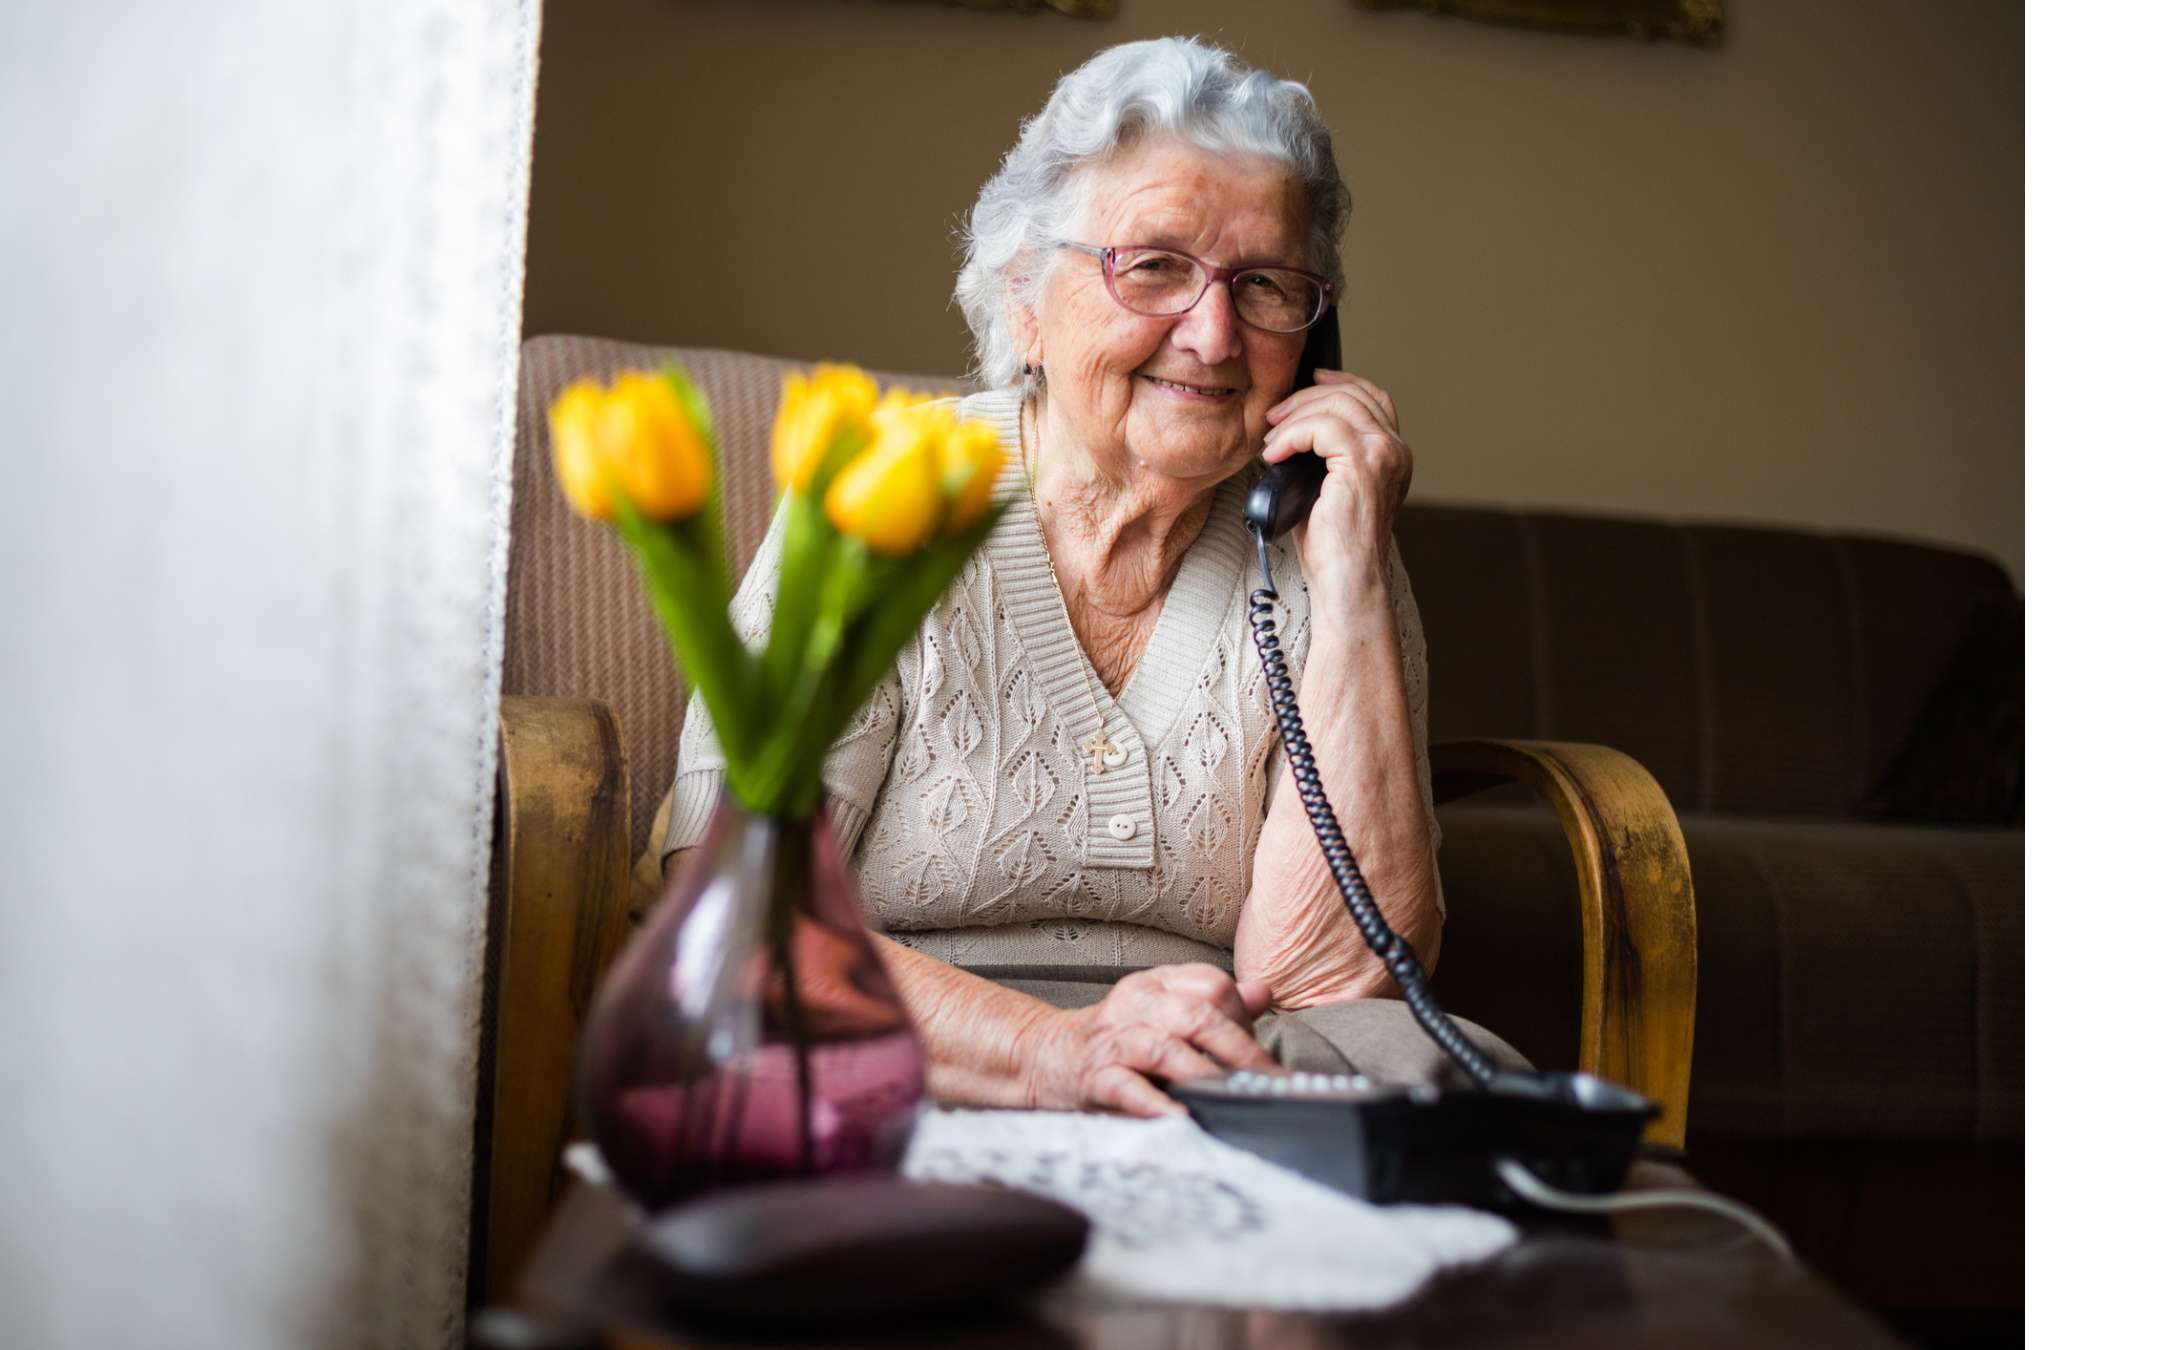 Telefono fisso per anziani: i migliori modelli facili ed intuitivi